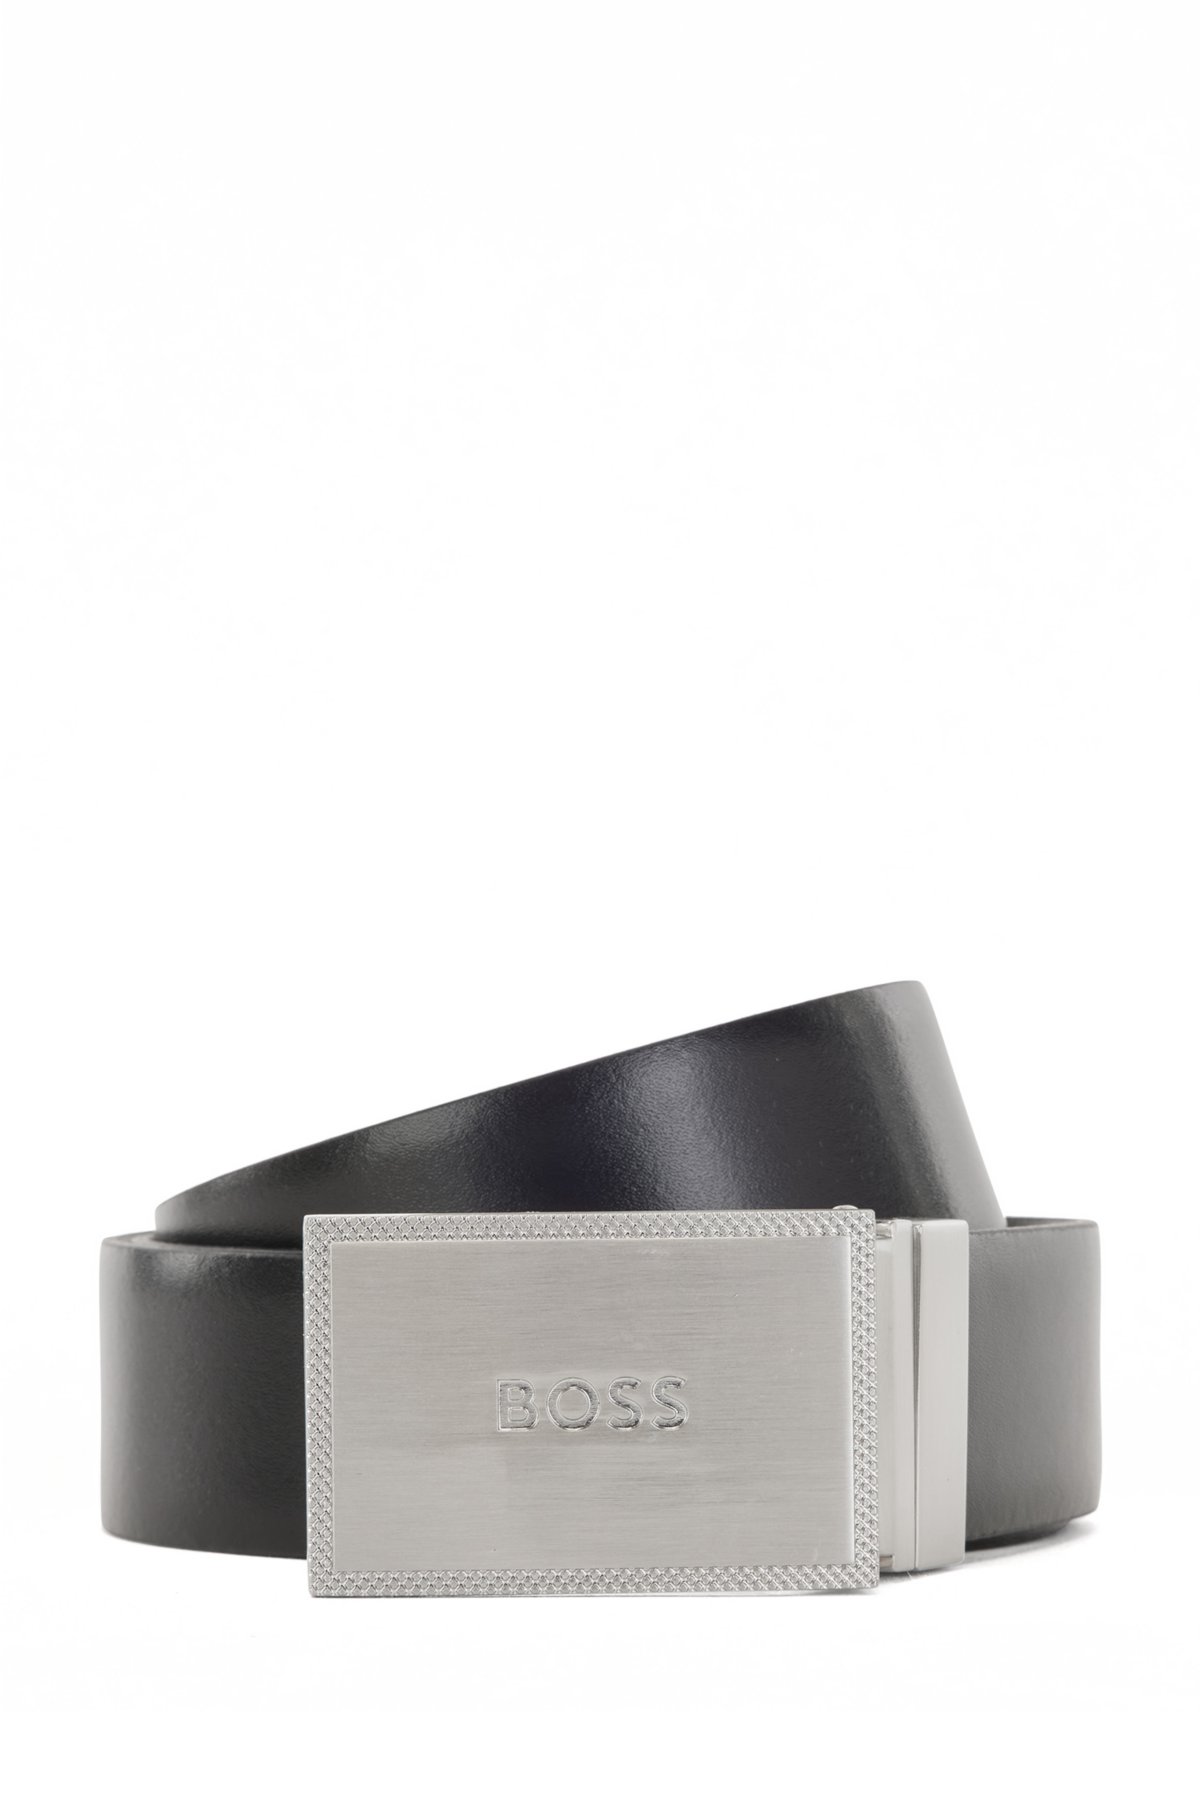 BOSS - Cinturón reversible de piel italiana con cierres de hebilla placa